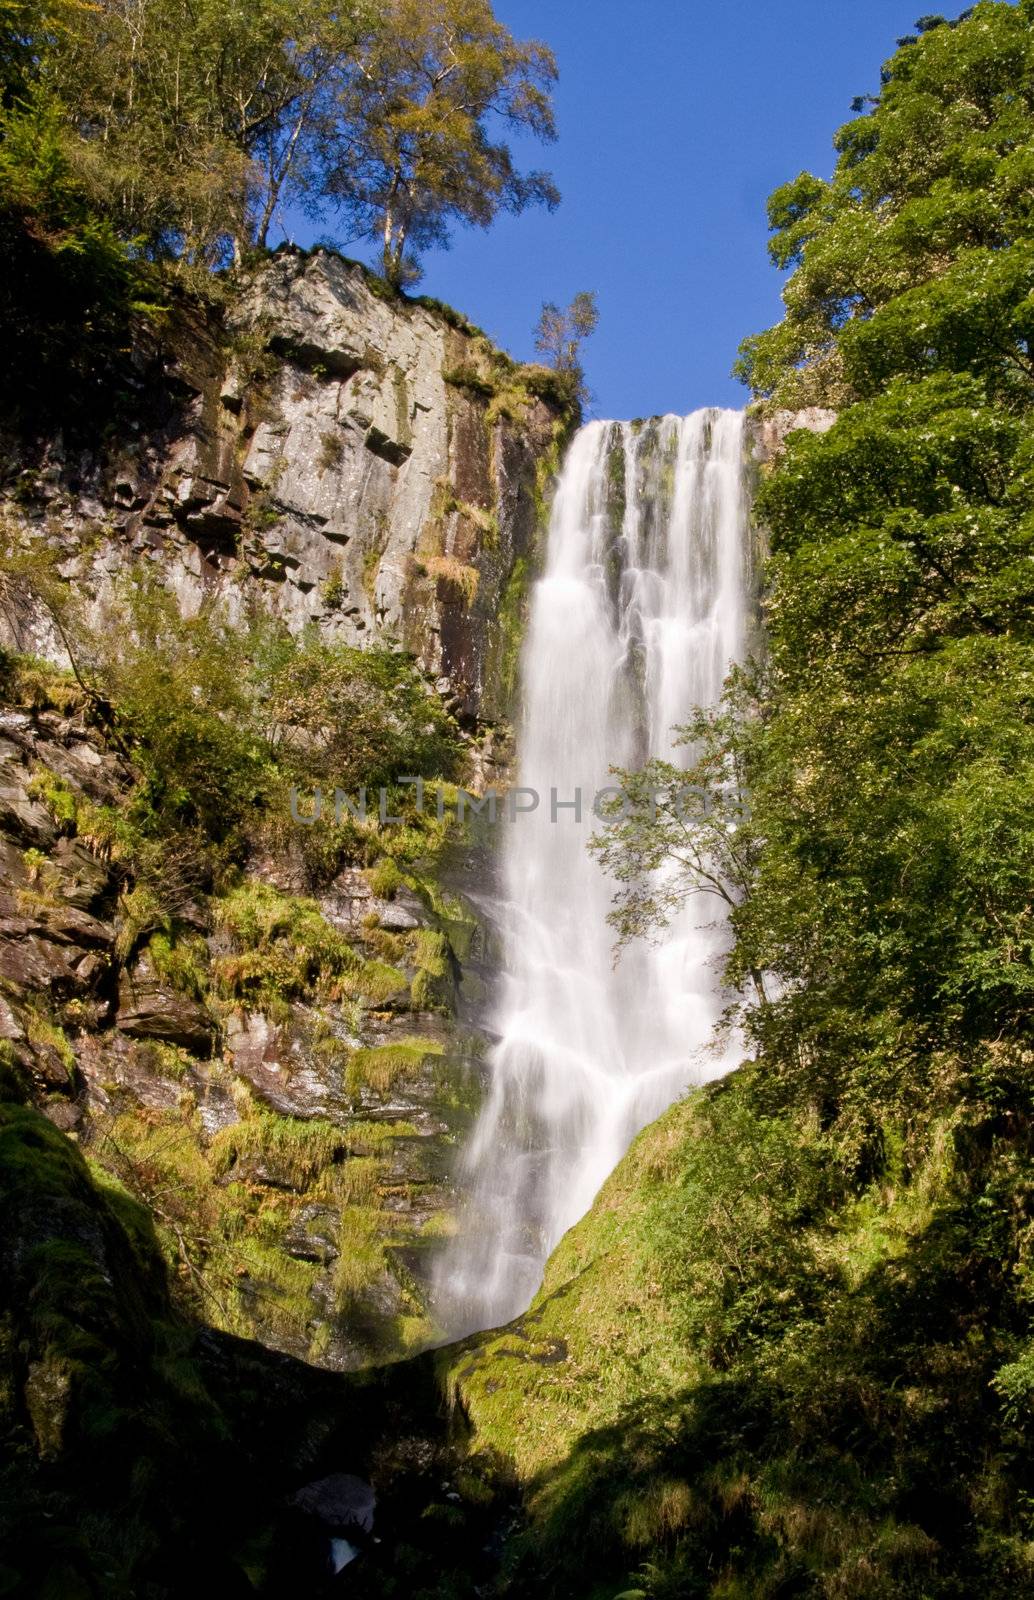 Overview of Pistyl Rhaeadr Waterfall near Llanrhaeadr in Wales